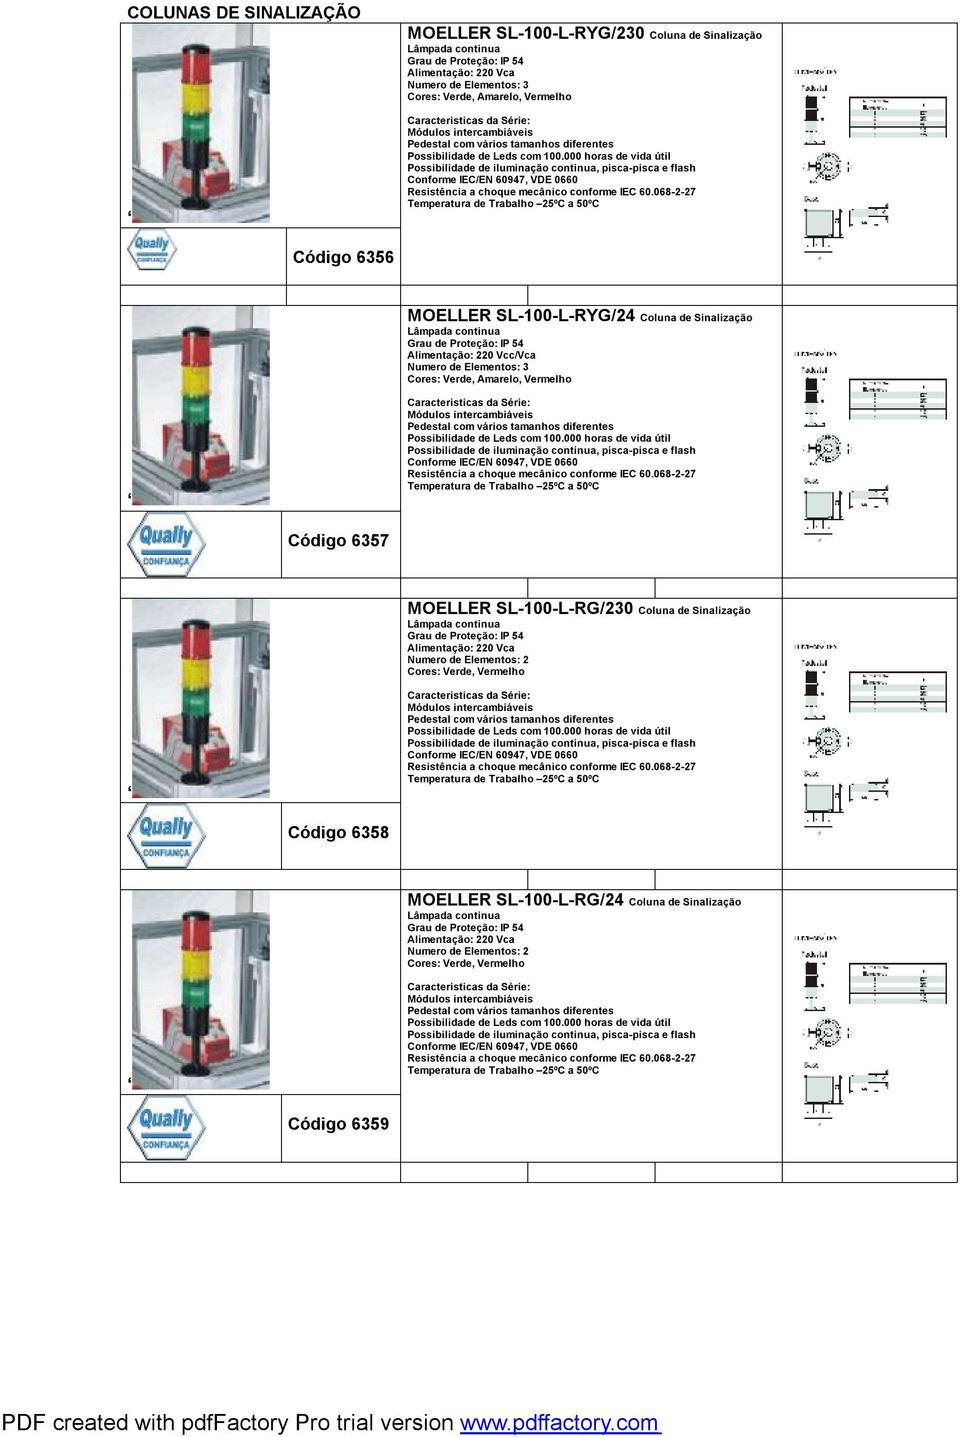 Cores: Verde, Amarelo, Vermelho Código 6357 MOELLER SL-100-L-RG/230 Coluna de Sinalização Numero de Elementos: 2 Cores: